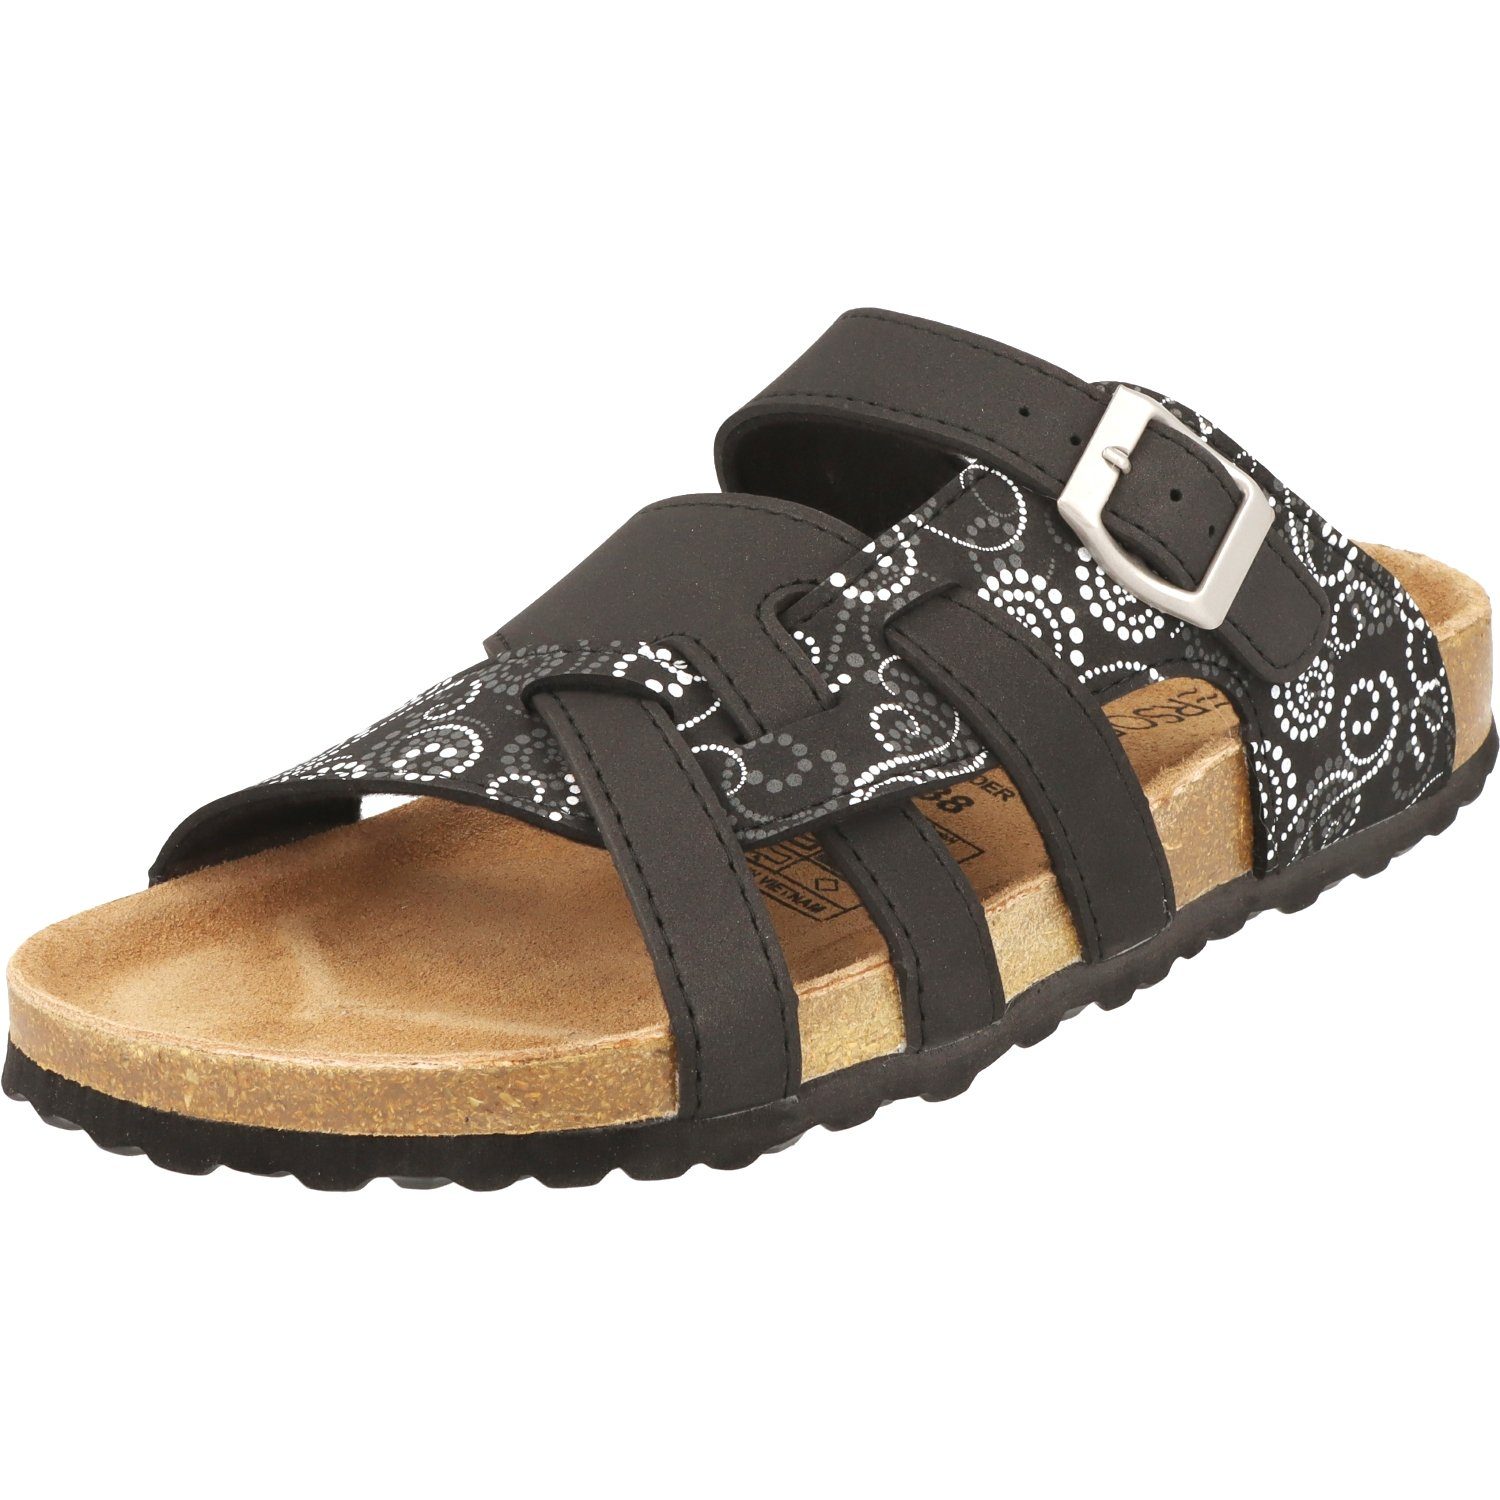 SUPERSOFT 274-147 Damen Schuhe Hausschuhe Lederfußbett Sandale Pantolette Black